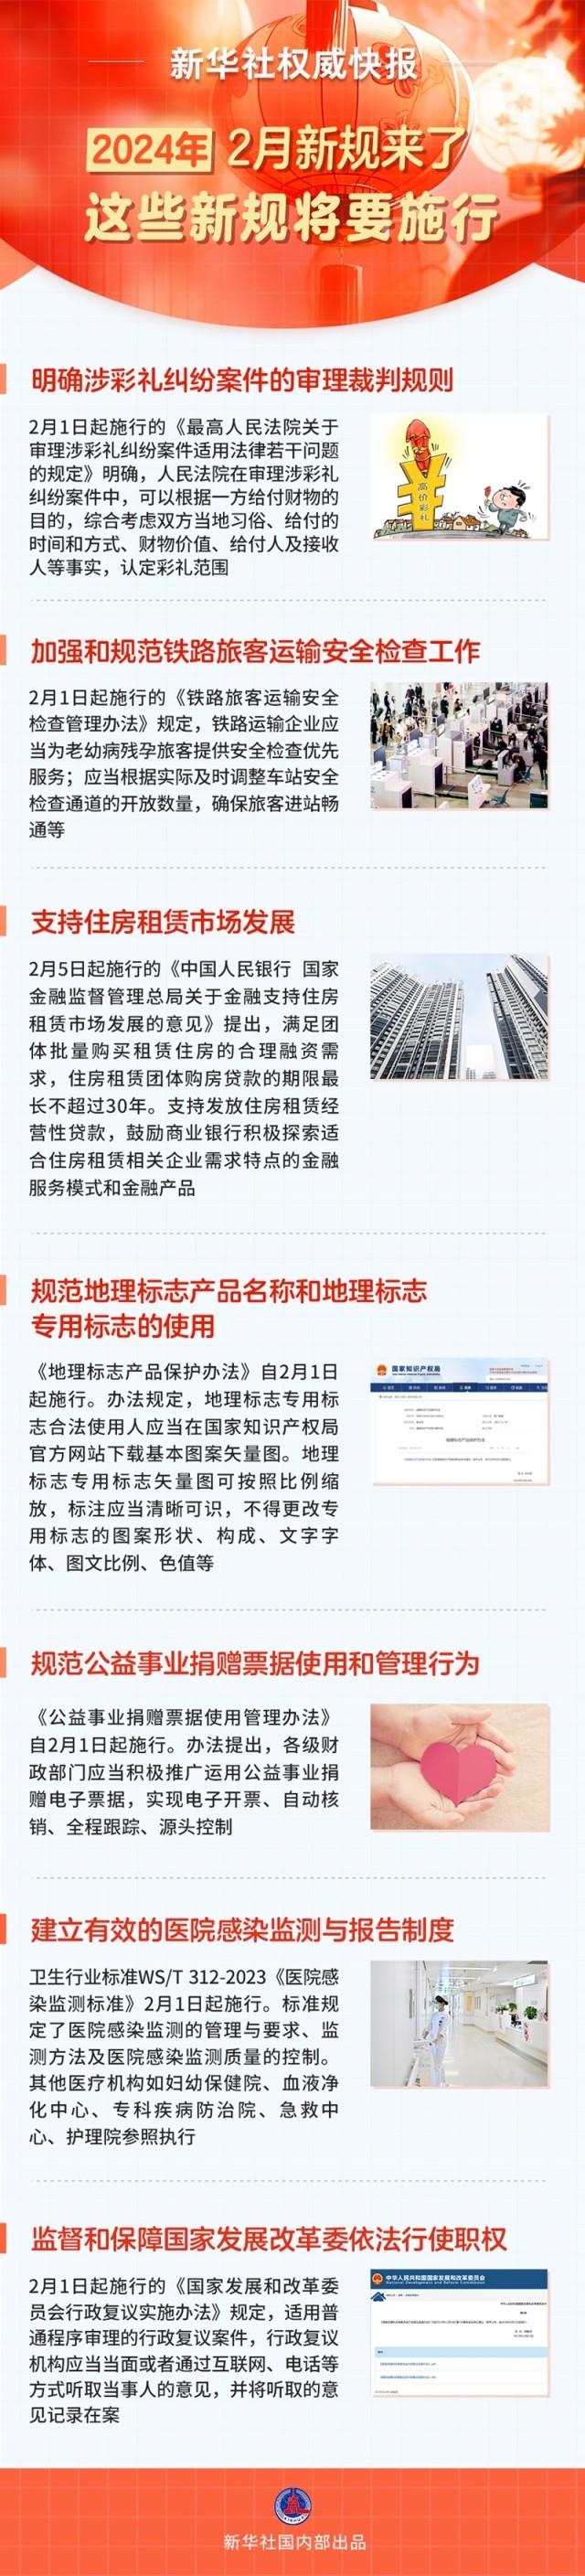 2月起这些新规将要施行涉及法律金融医卫等领域_中国网